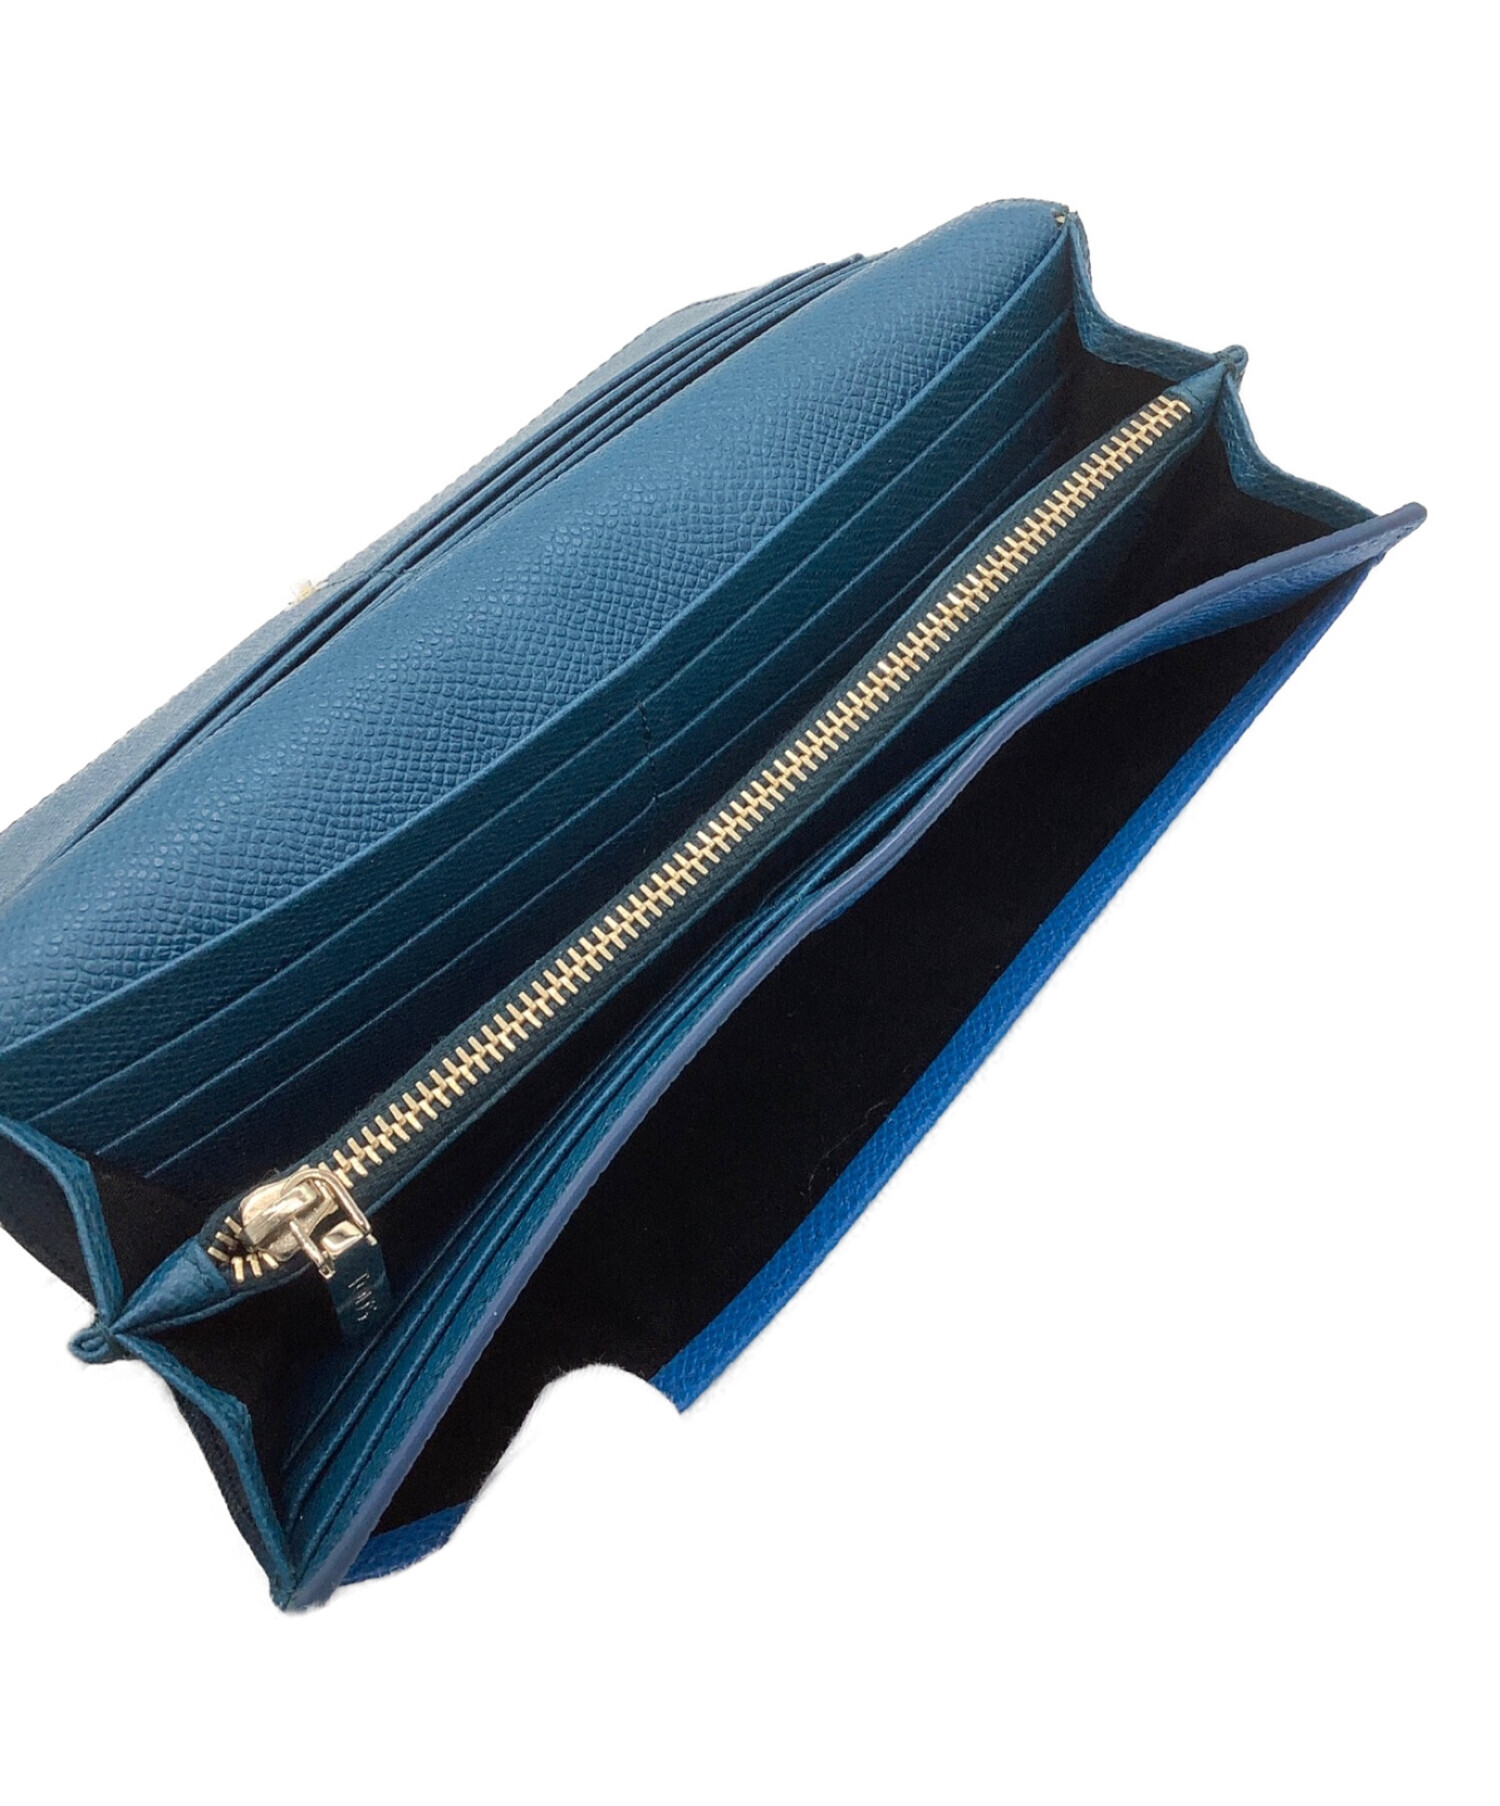 TOD'S 長財布 短期間使用 ブルー - ファッション